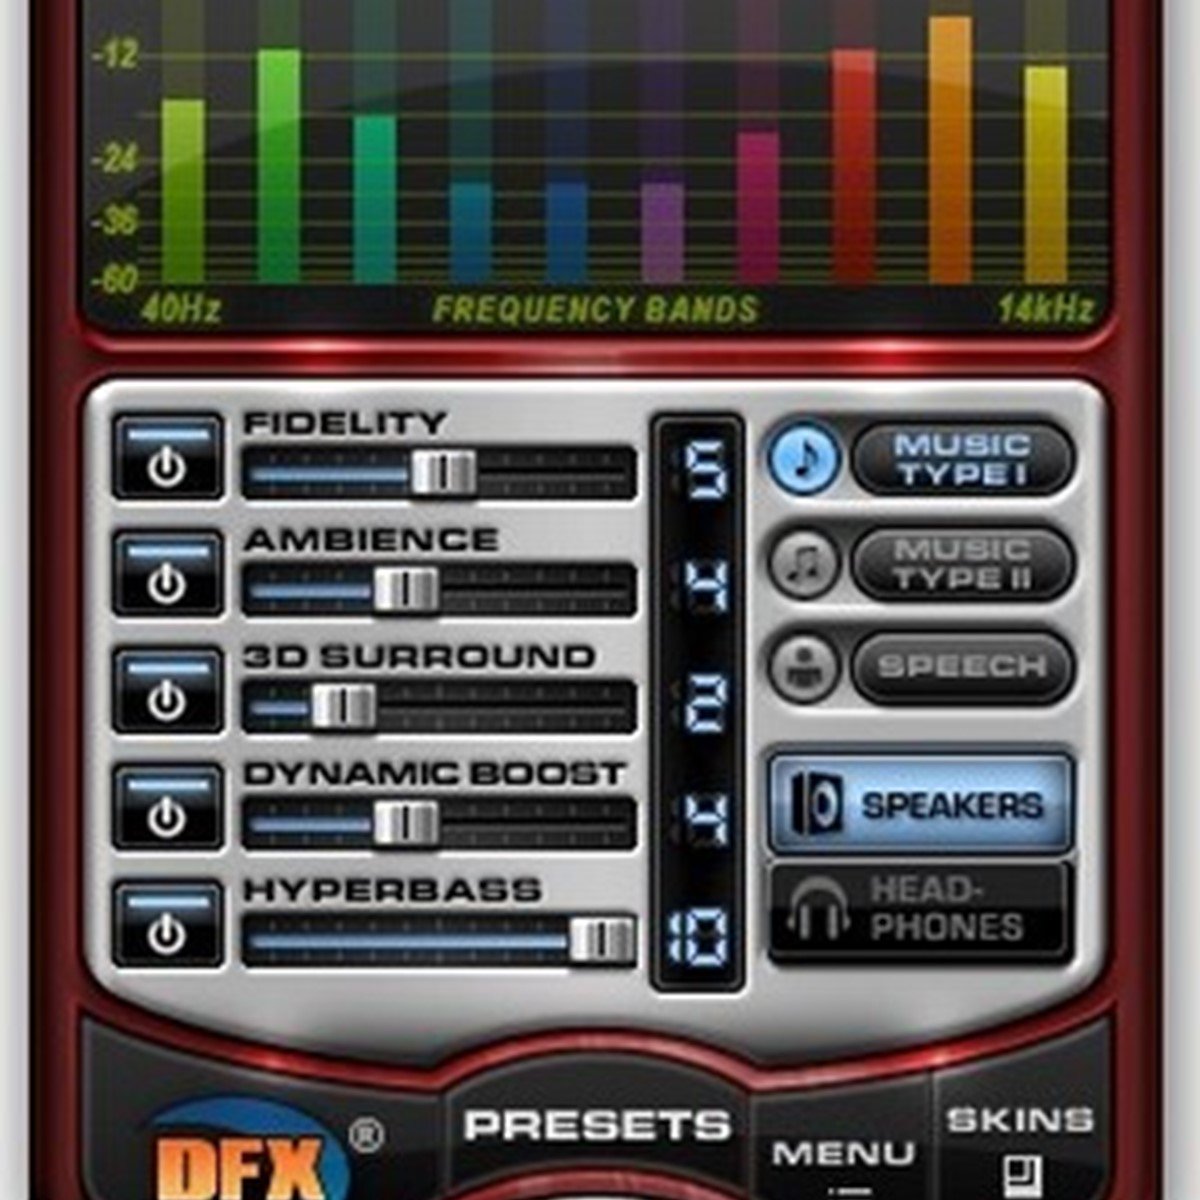 dfx audio enhancer 11 full